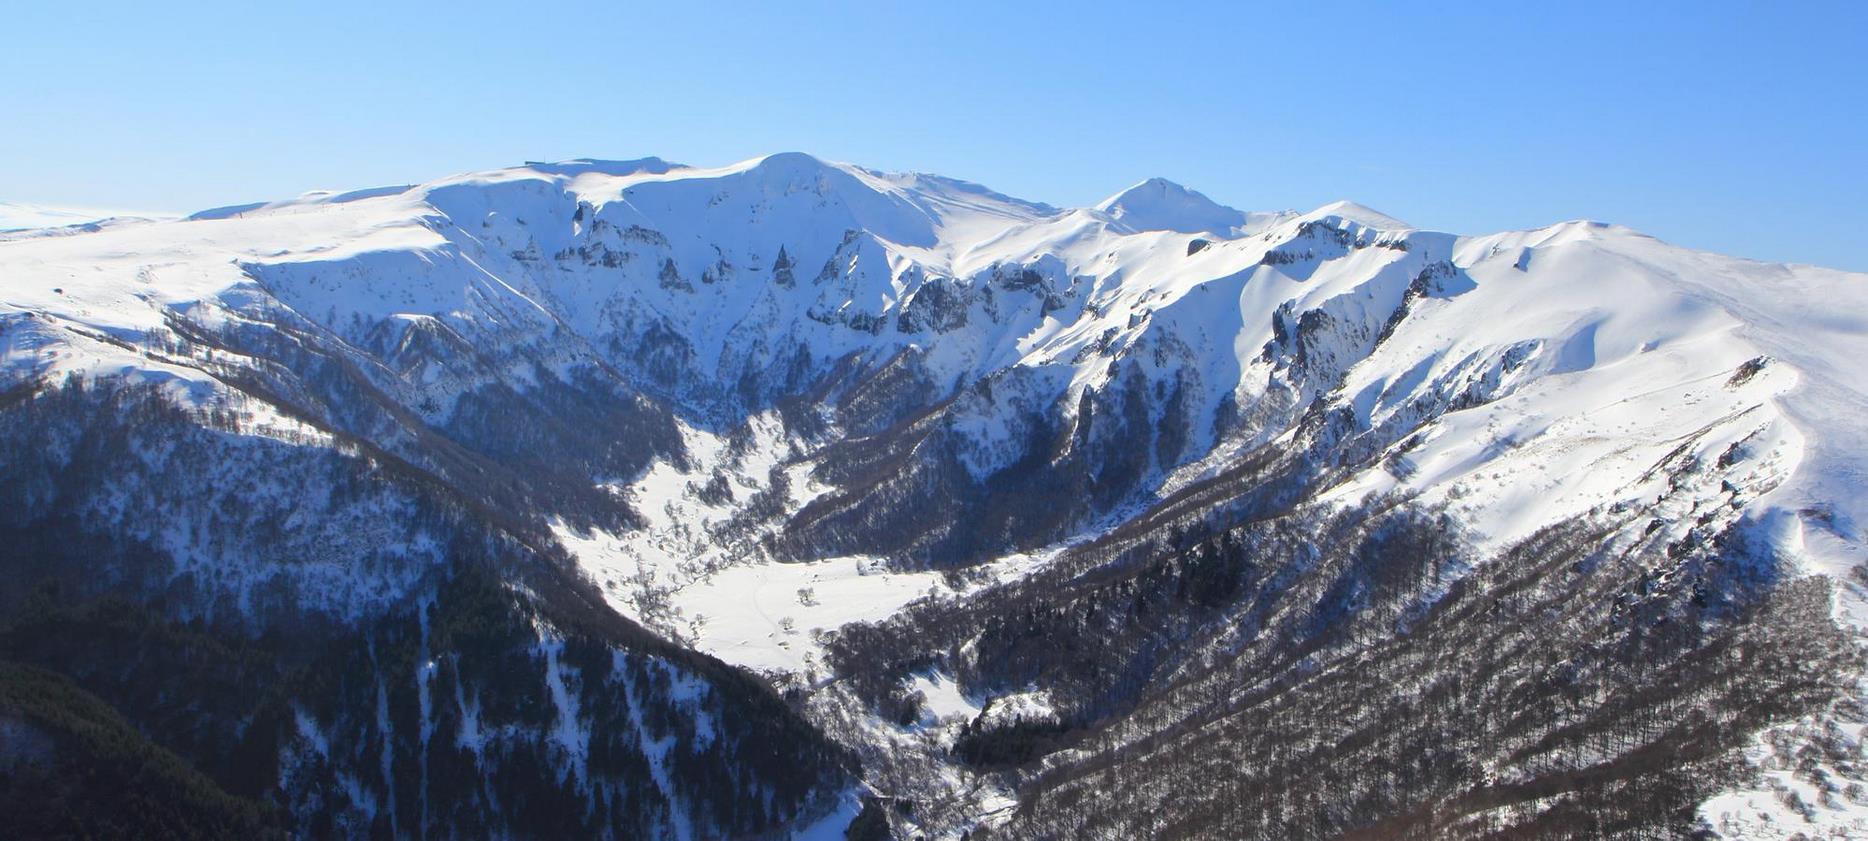 Super Besse - The Chaudefour valley under the snow